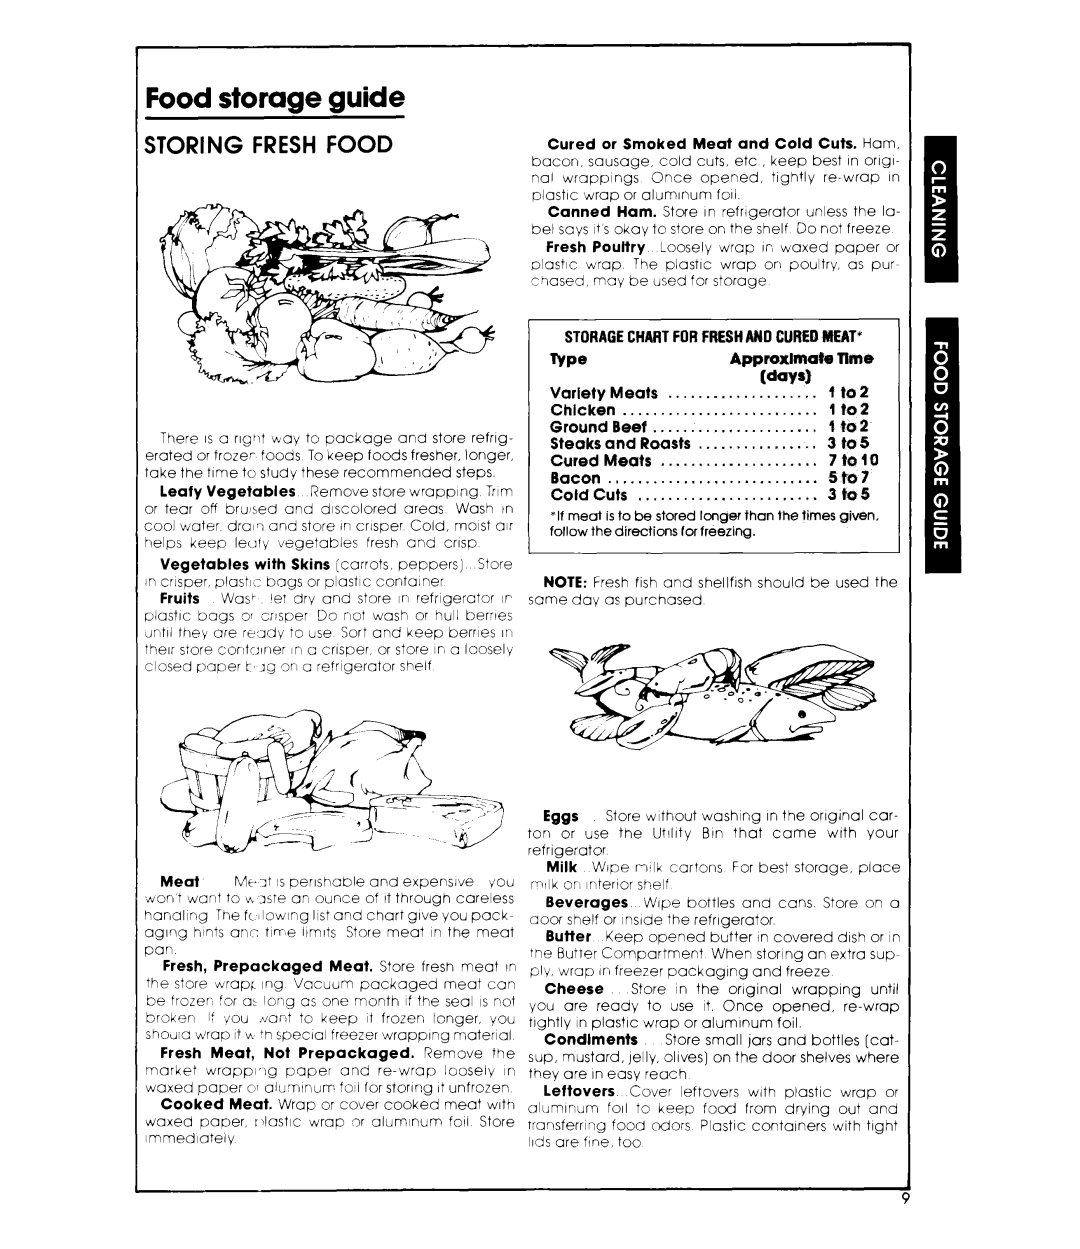 Whirlpool ETl8CK manual Food storage guide, Storing Fresh Food 